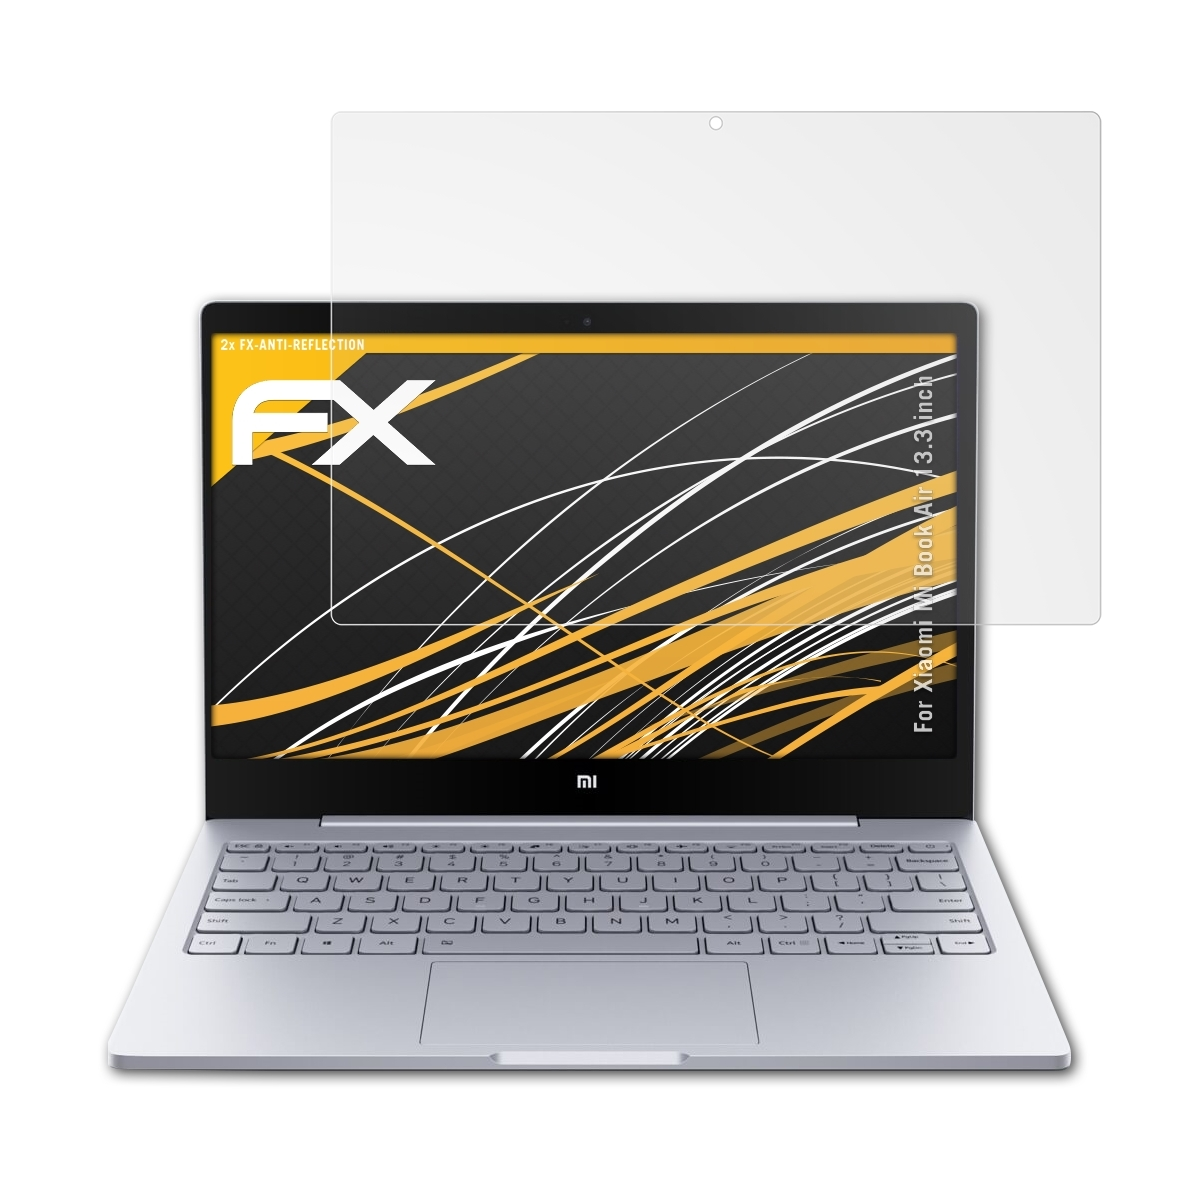 Book Xiaomi inch)) FX-Antireflex 2x Mi Displayschutz(für (13.3 Air ATFOLIX